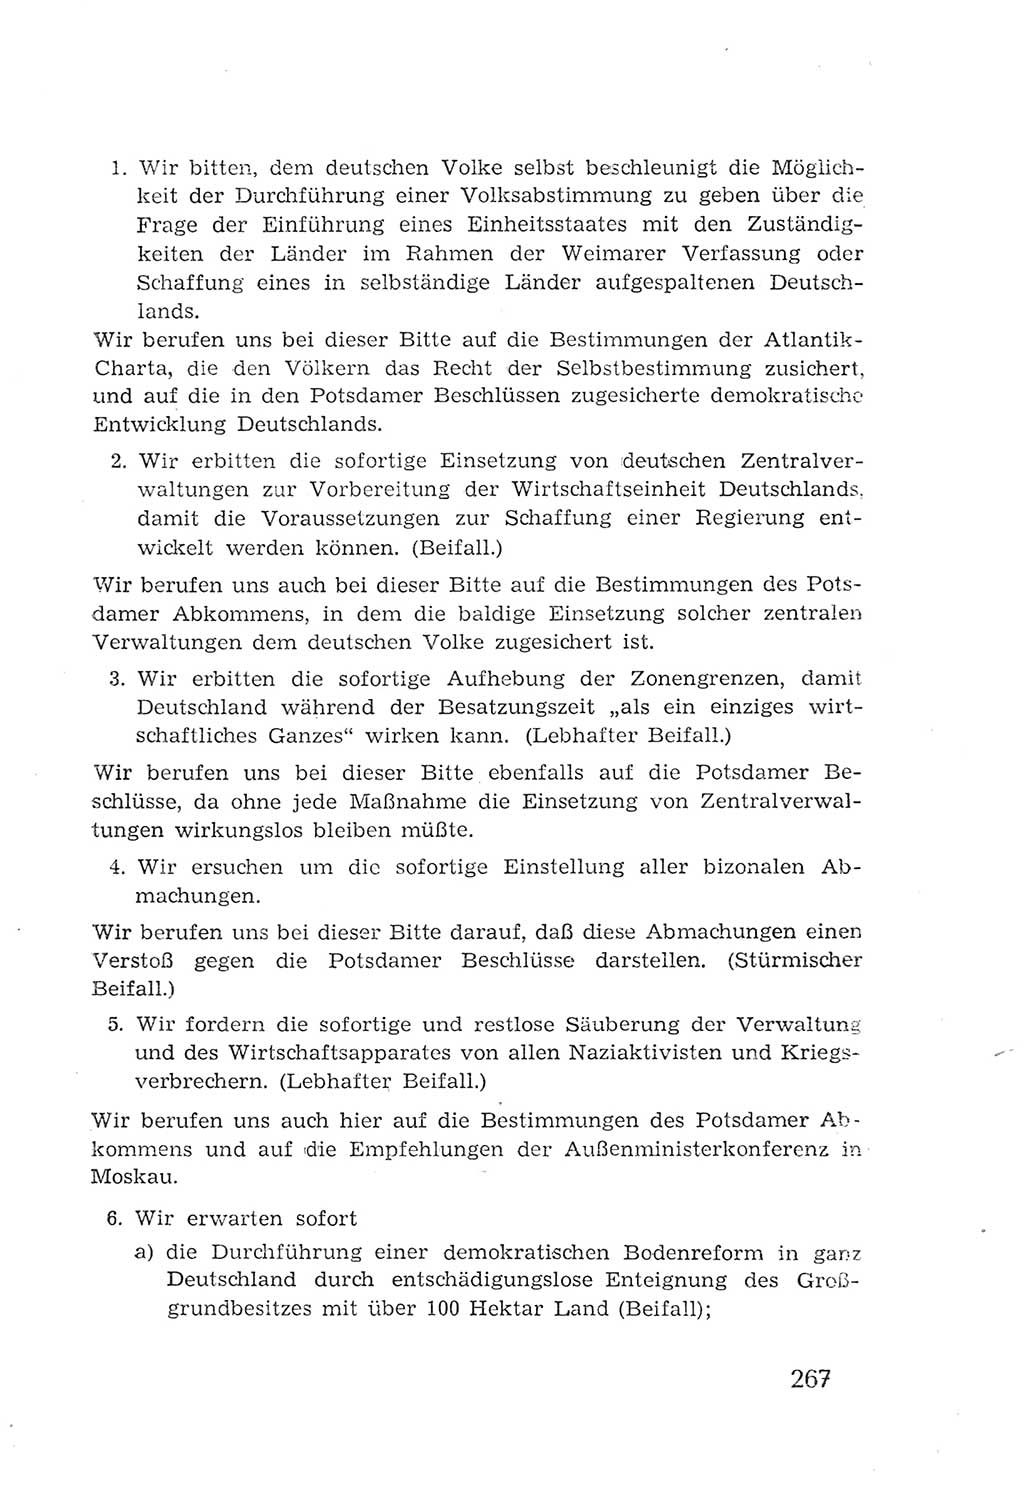 Protokoll der Verhandlungen des 2. Parteitages der Sozialistischen Einheitspartei Deutschlands (SED) [Sowjetische Besatzungszone (SBZ) Deutschlands] 1947, Seite 267 (Prot. Verh. 2. PT SED SBZ Dtl. 1947, S. 267)